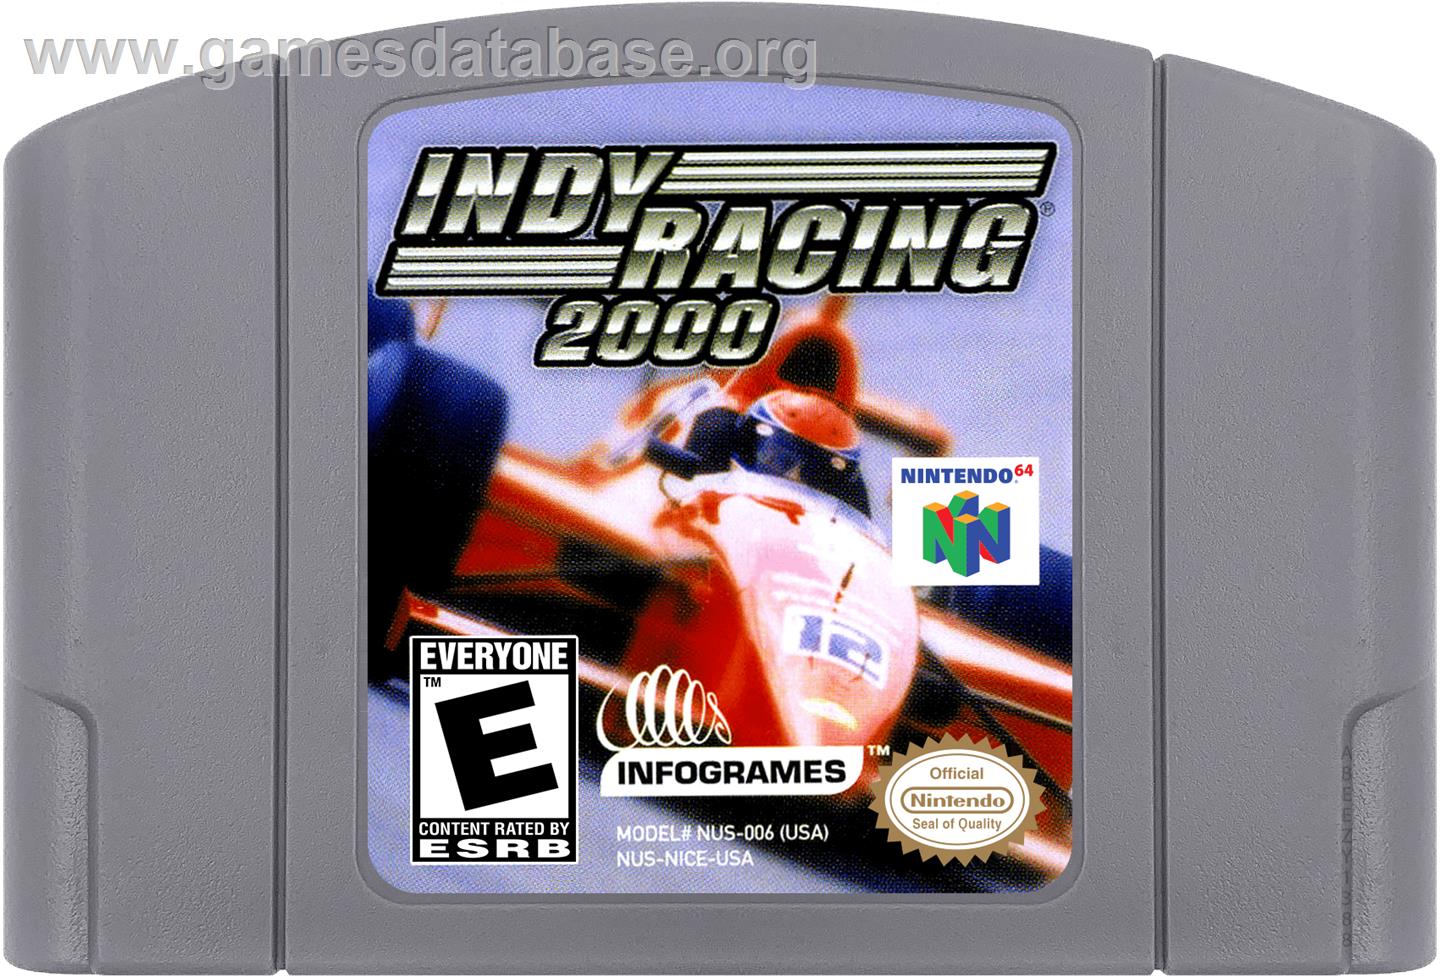 Indy Racing 2000 - Nintendo N64 - Artwork - Cartridge